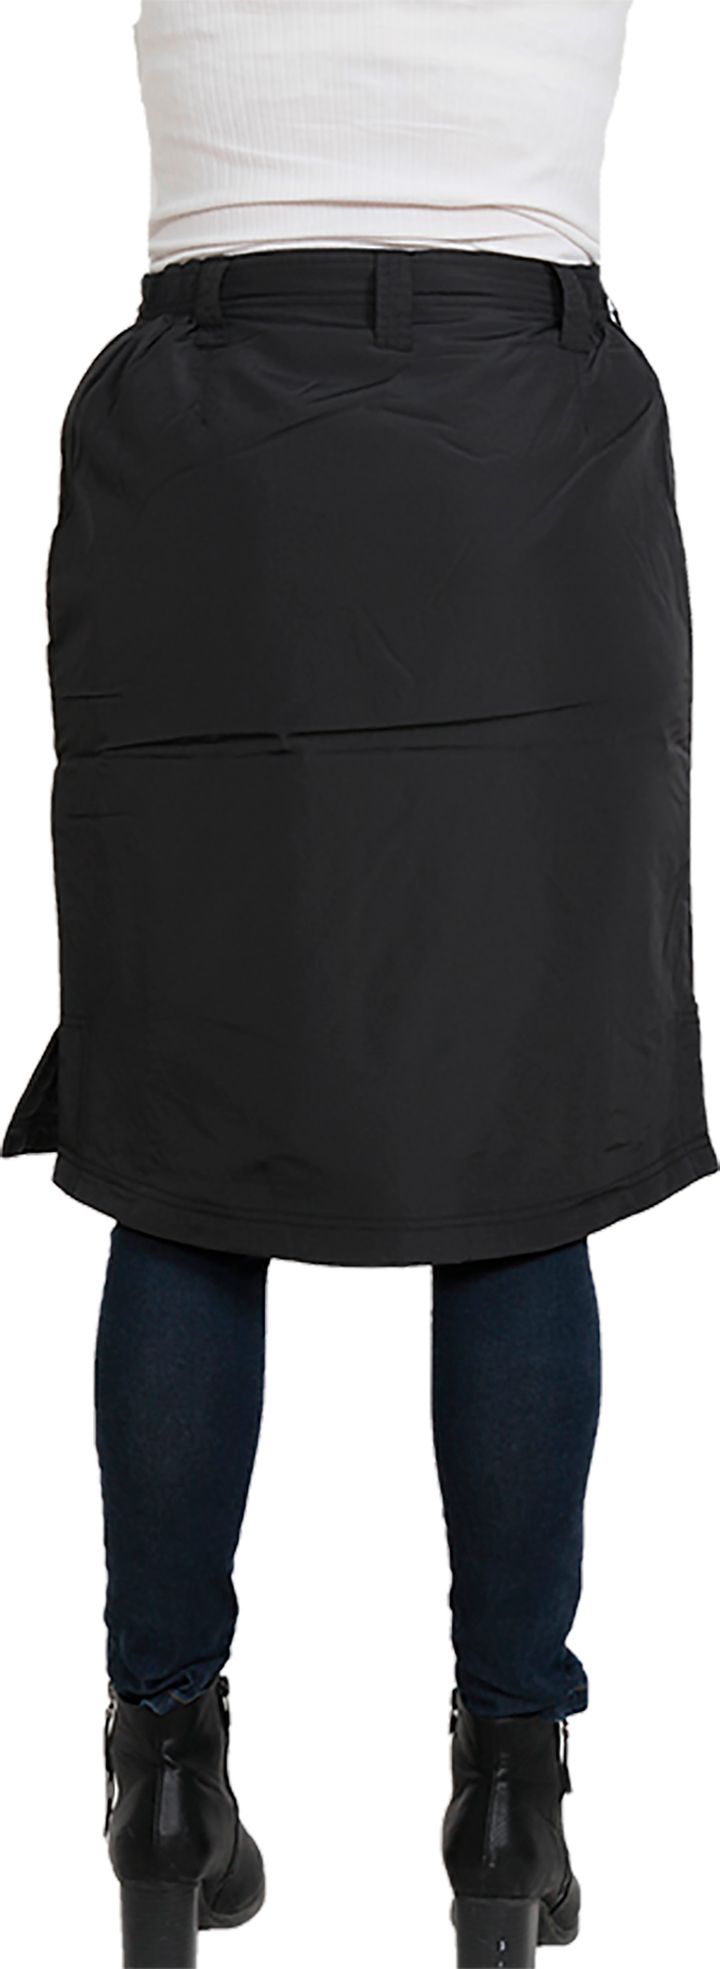 Comfort Short Skirt Black Dobsom